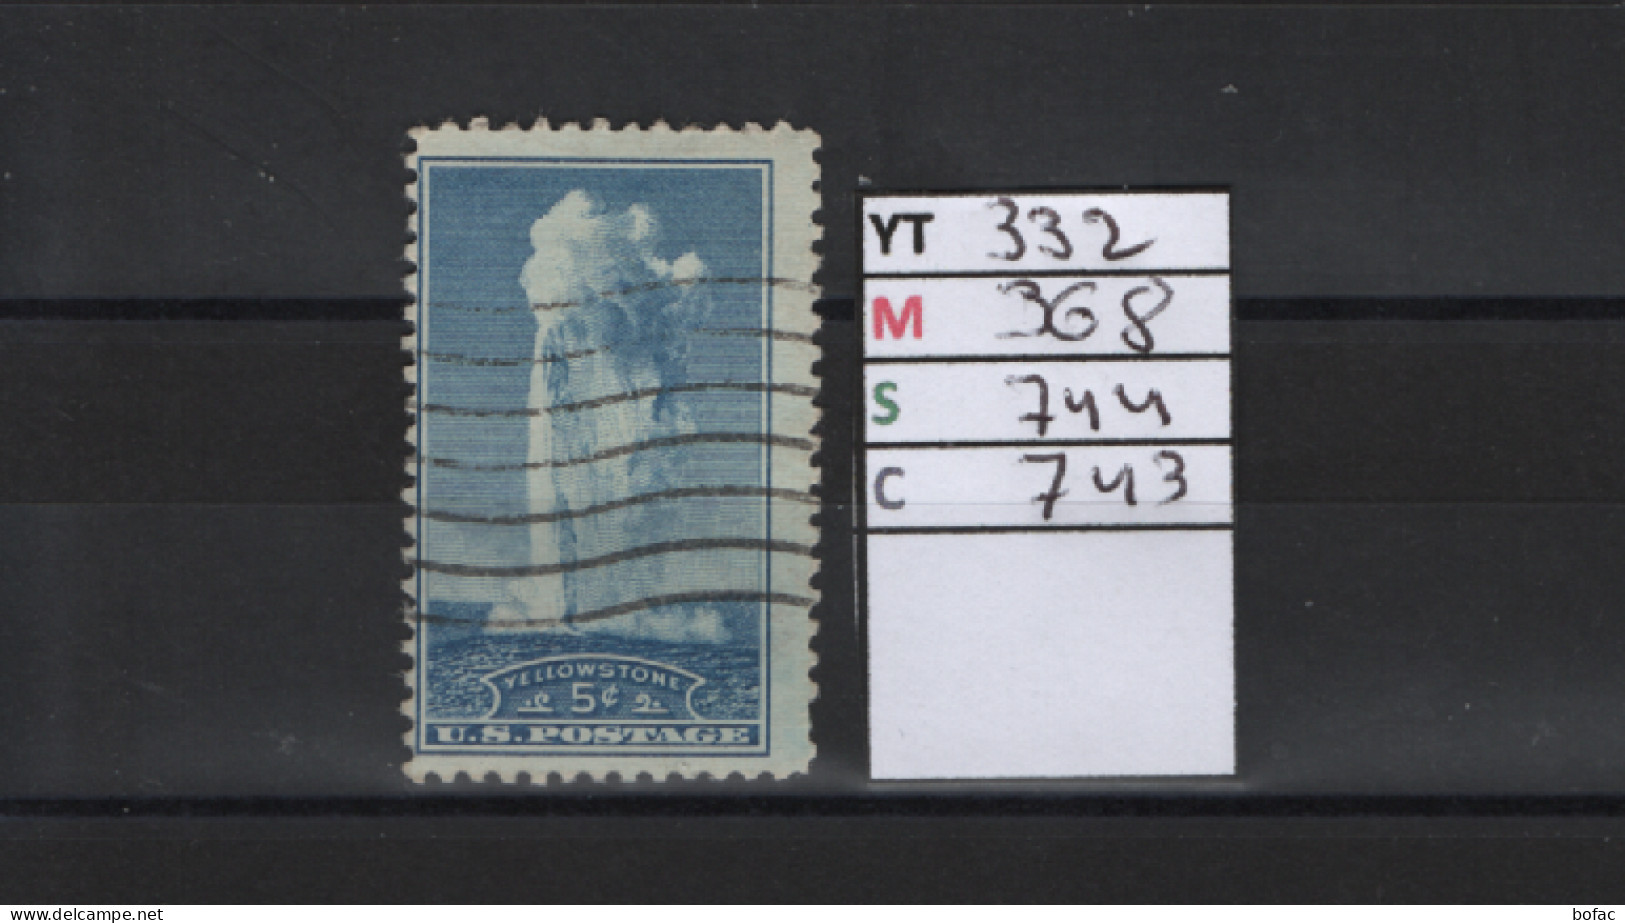 PRIX FIXE Obl 332 YT 368 MIC 744 SCSOT 743 GIB Geyser Wyoming 1934 Etats Unis 58A/01 - Oblitérés